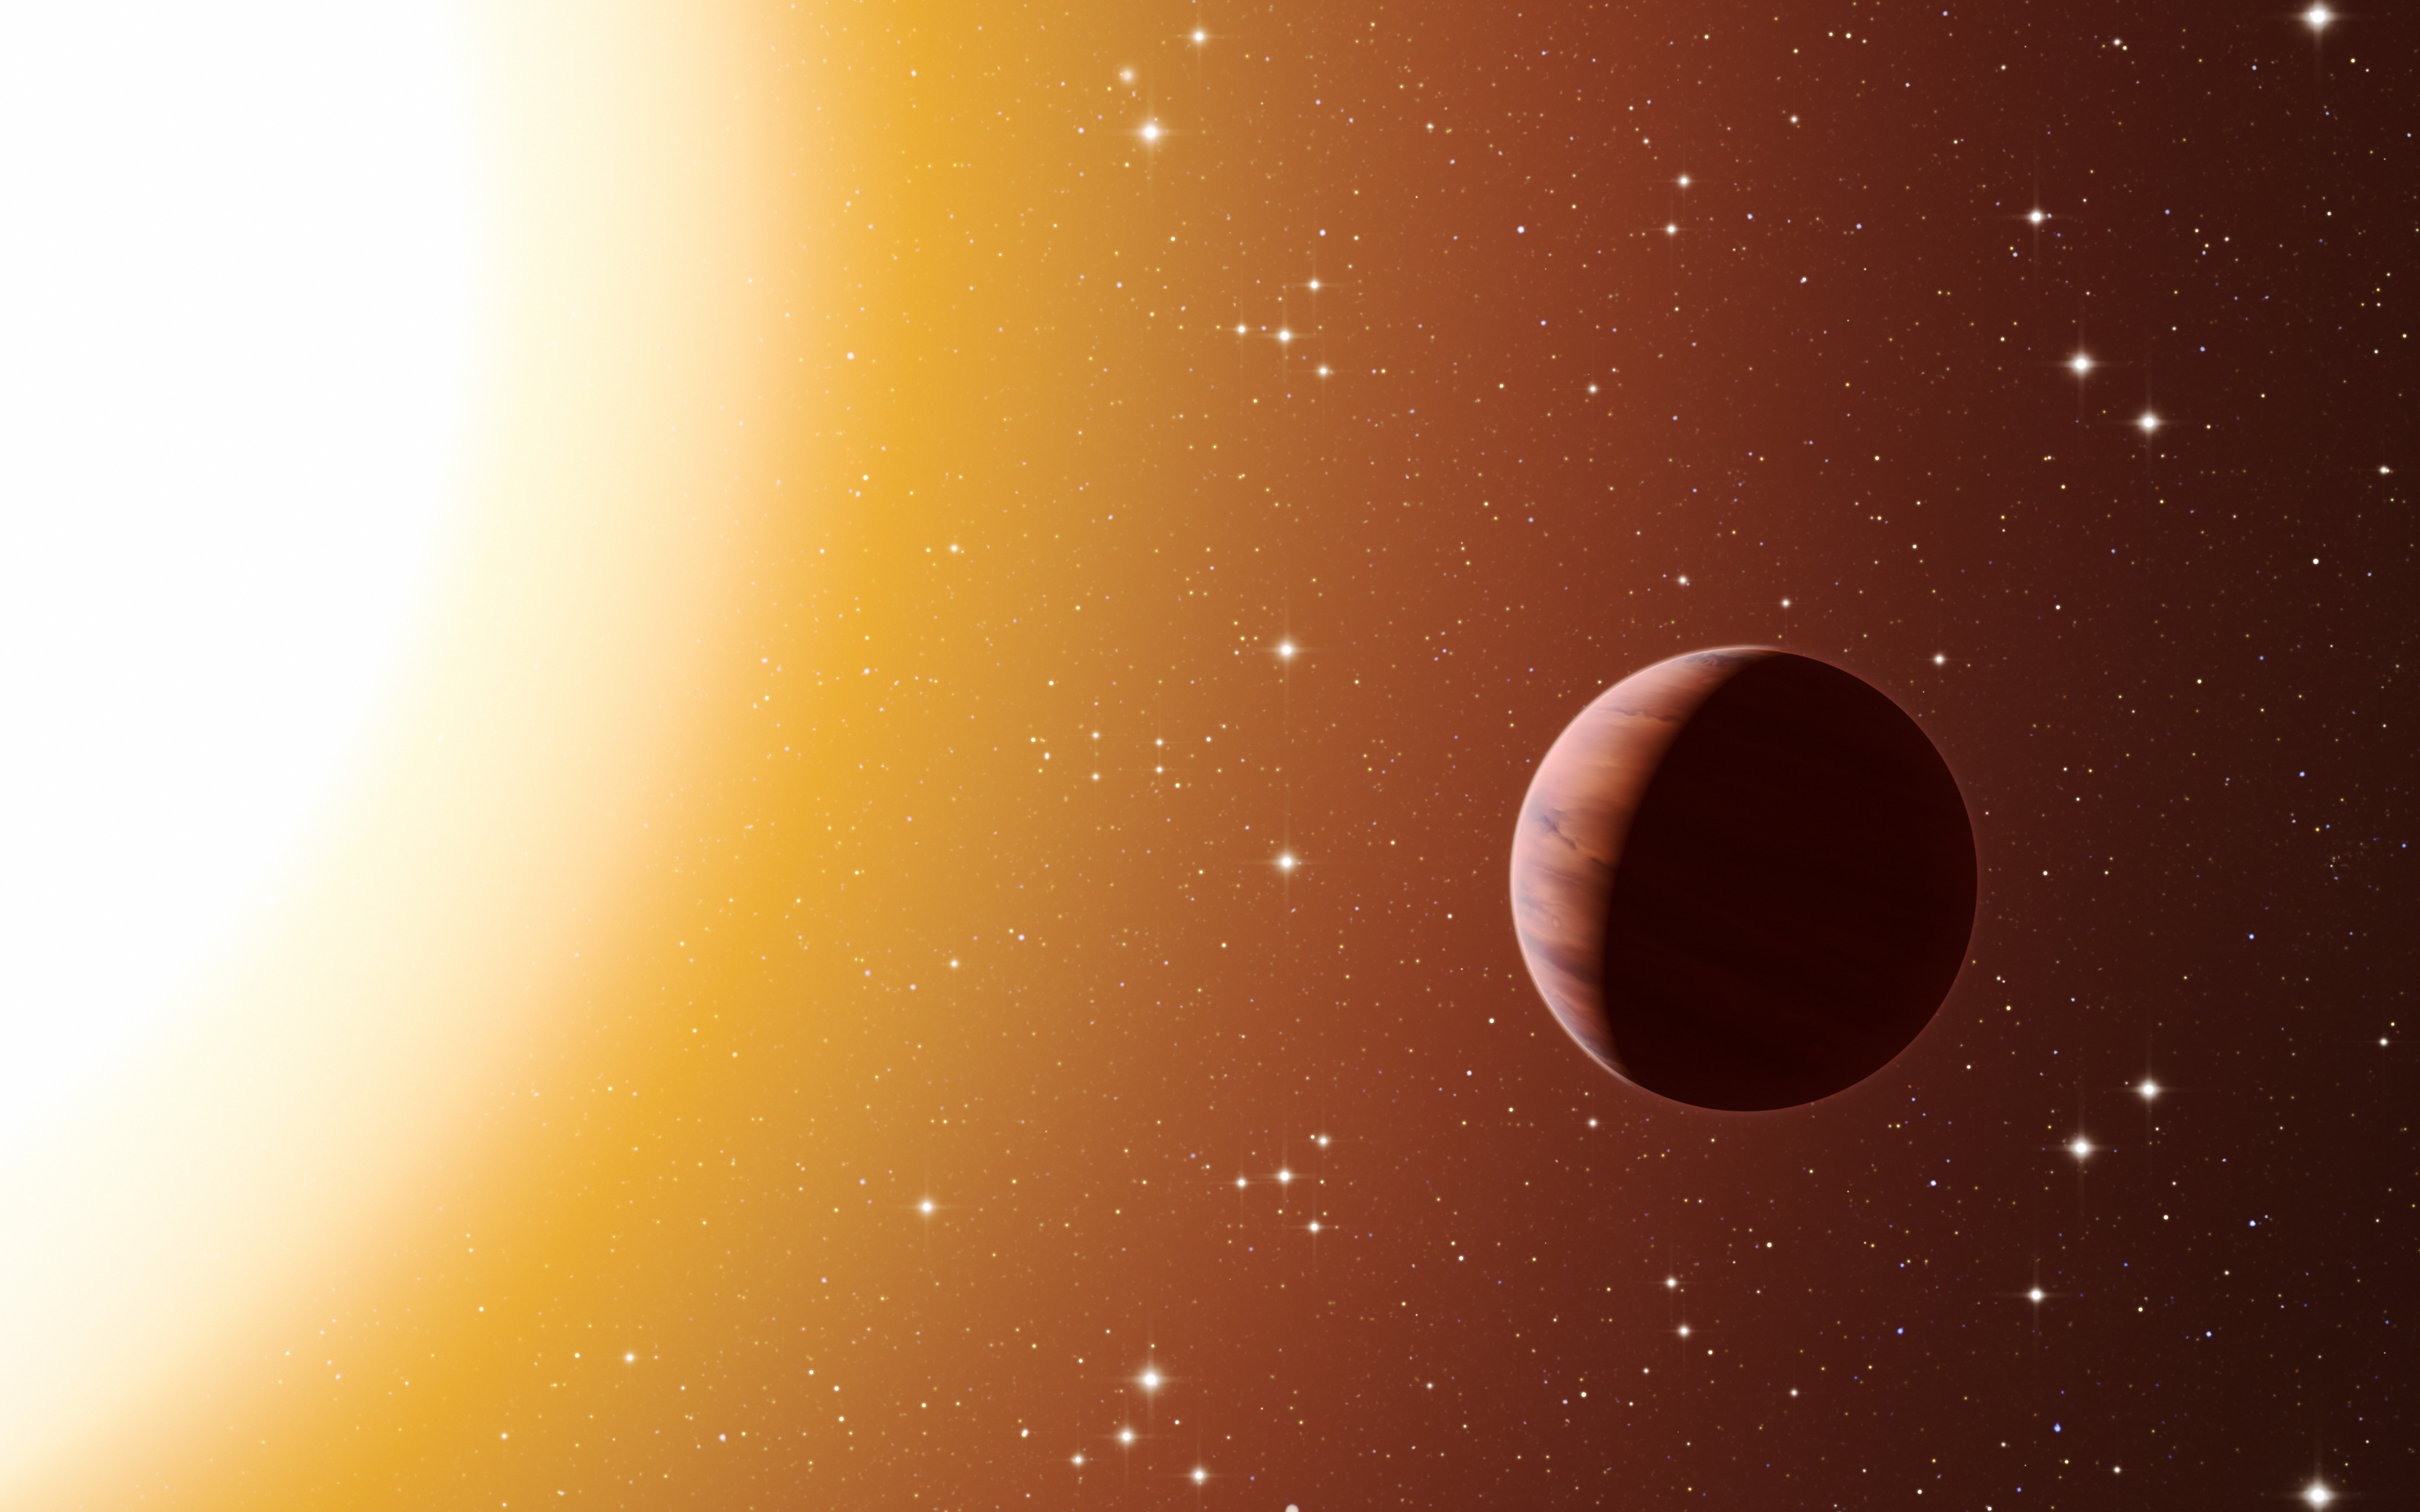 K2-39b est une planète géante, huit fois plus grosse que la Terre et cinquante fois plus massive, découverte sur une orbite très proche d’une étoile sous-géante. Les astronomes sont étonnés qu’elle ait pu survivre aux forces de marée de son étoile. © Eso, L. Calçada